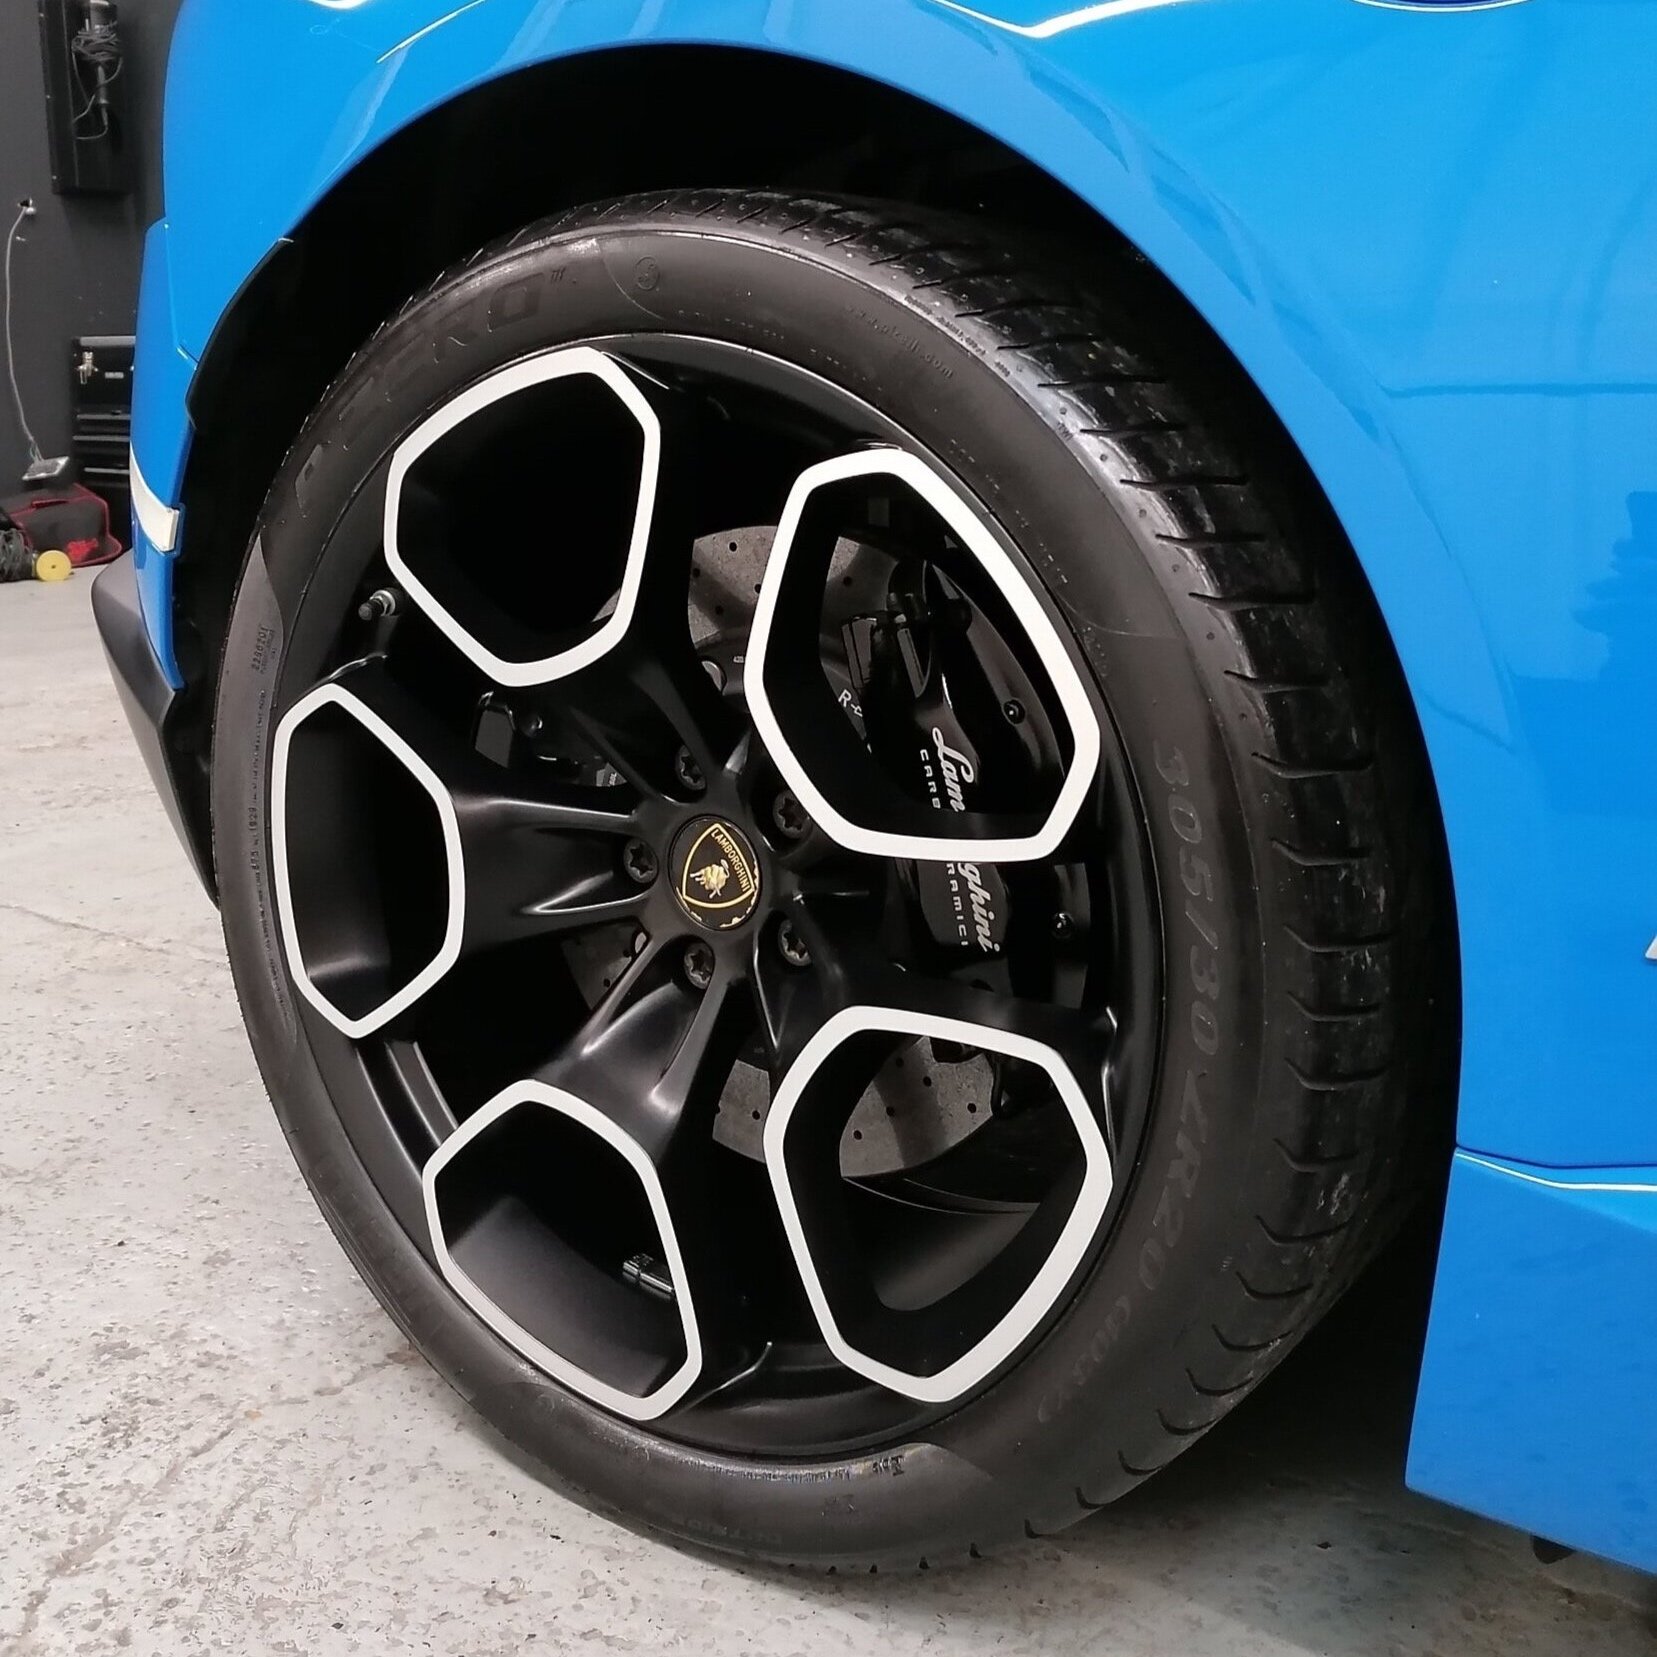 Lamborghini Alloy Wheel Repair Refurbishment Service in London E2